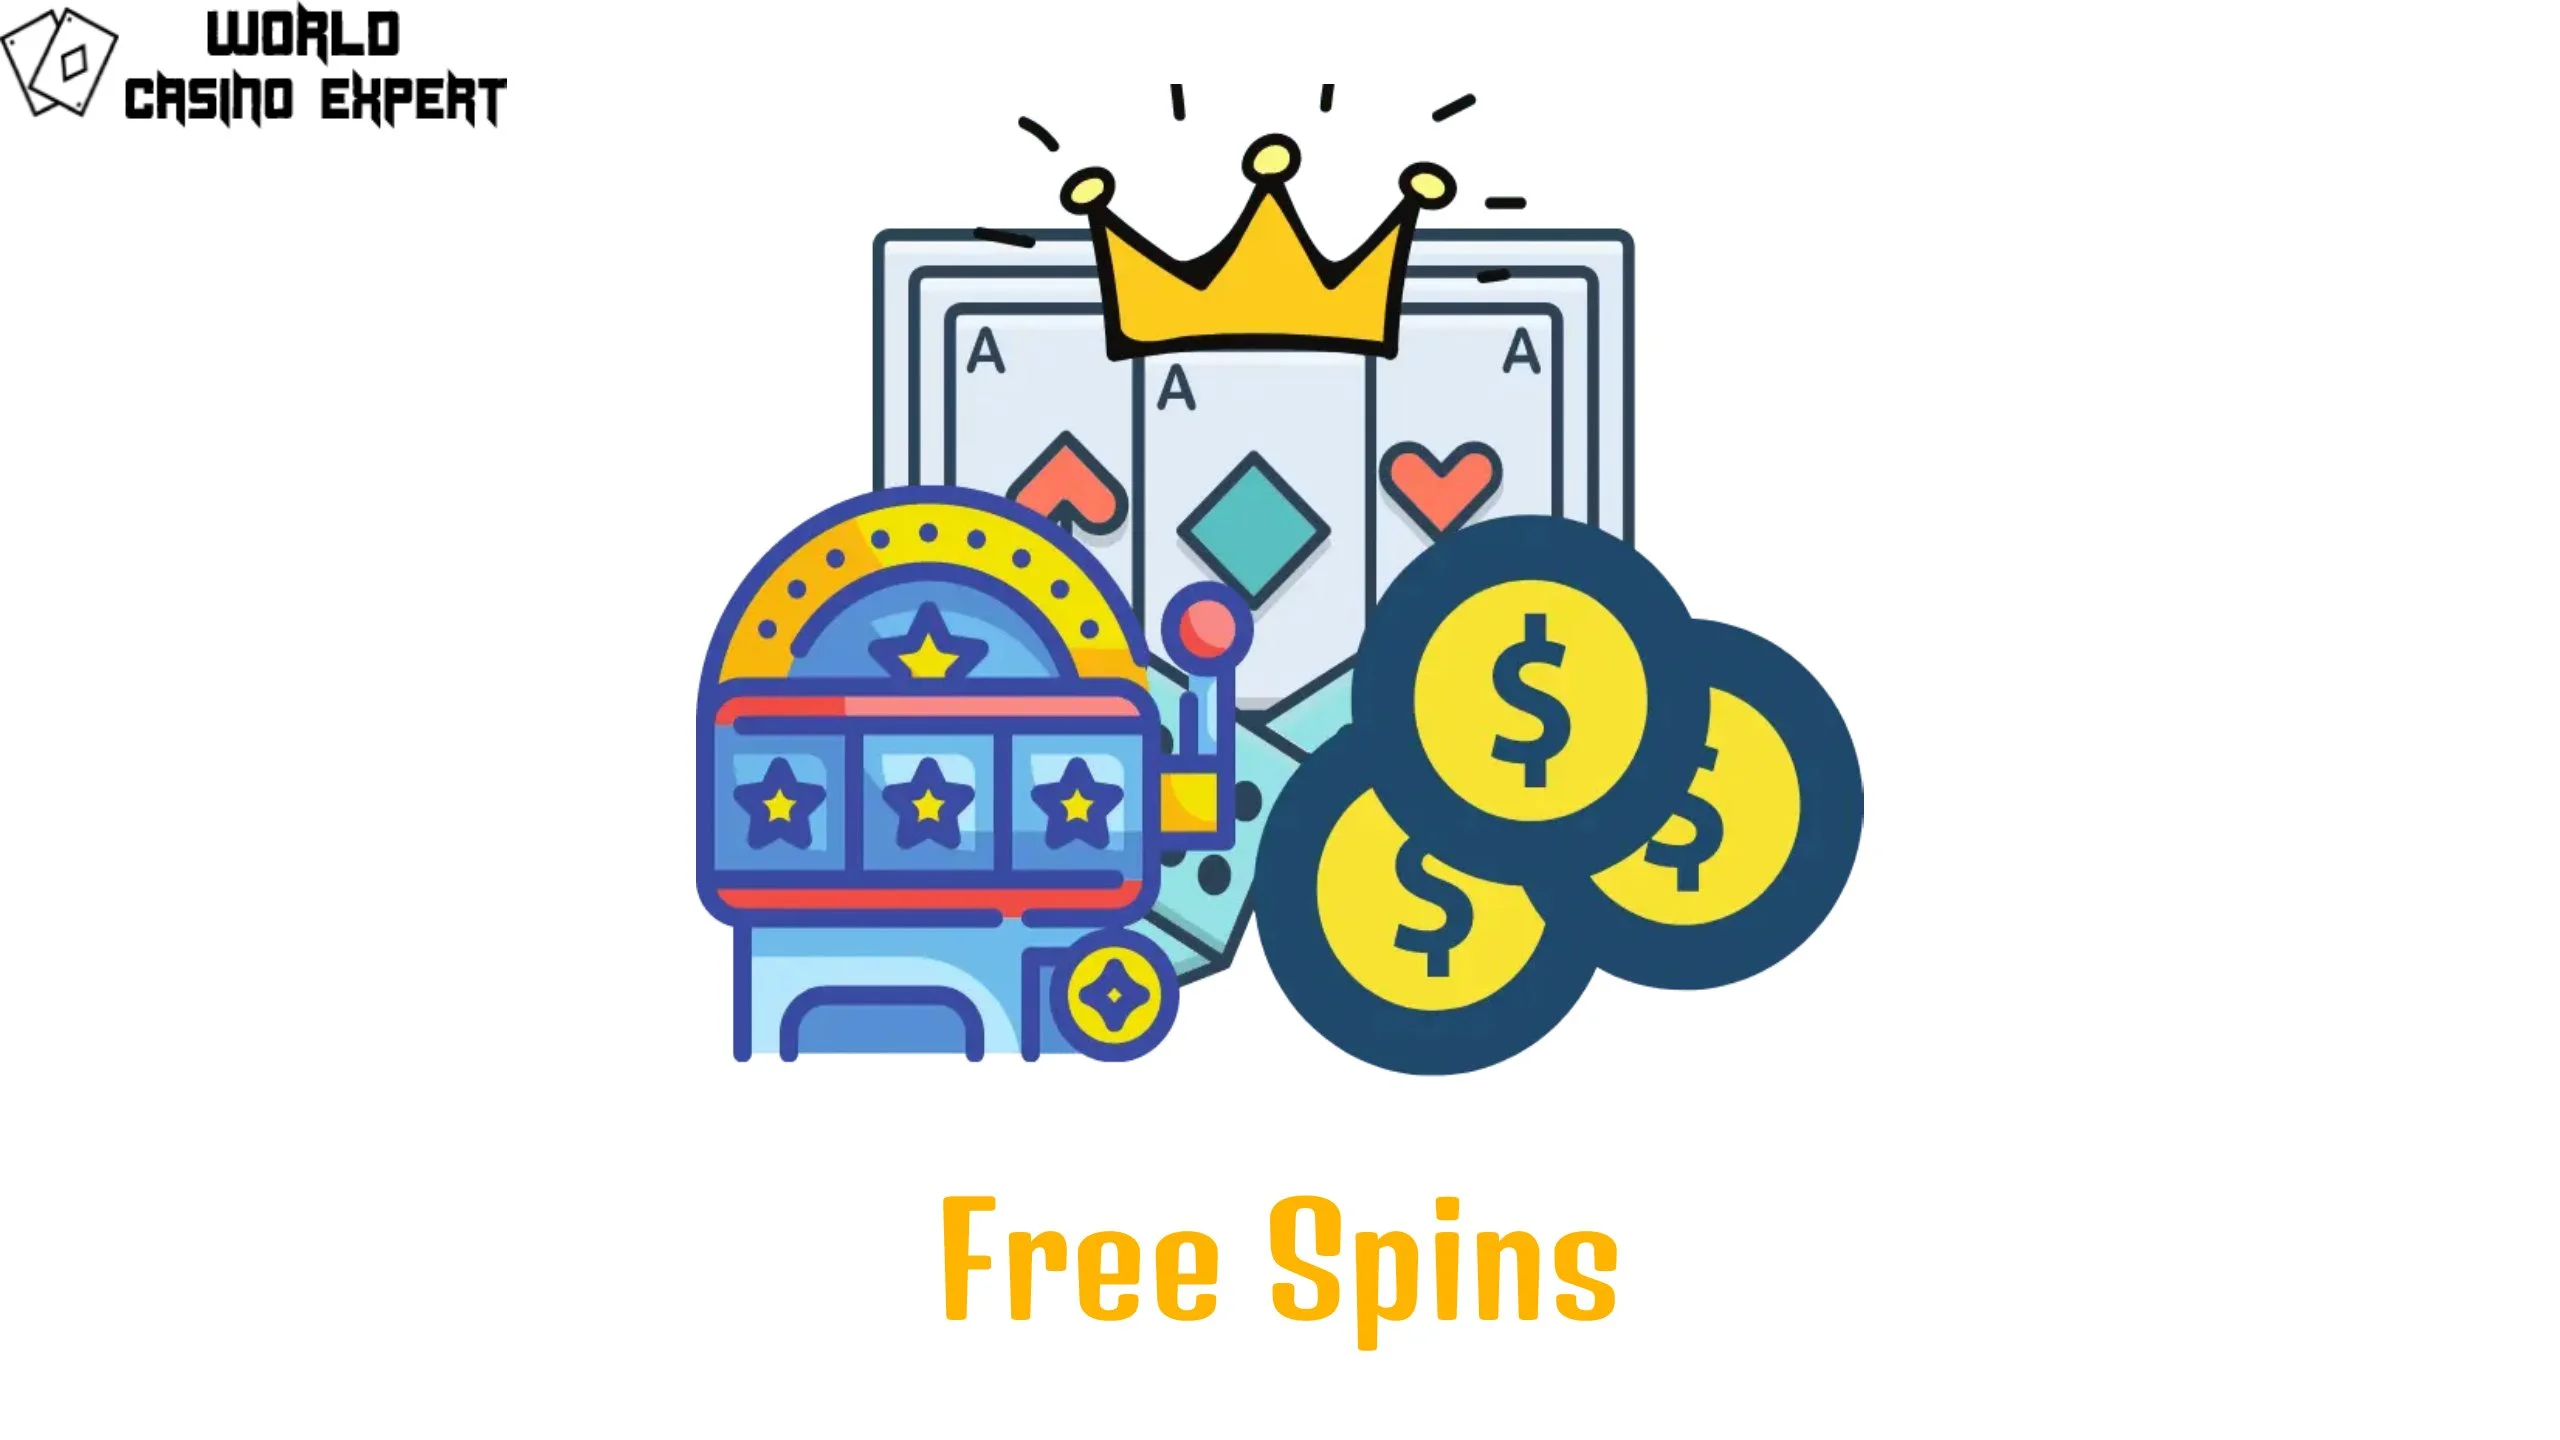 Free Spins Casino | World Casino Expert